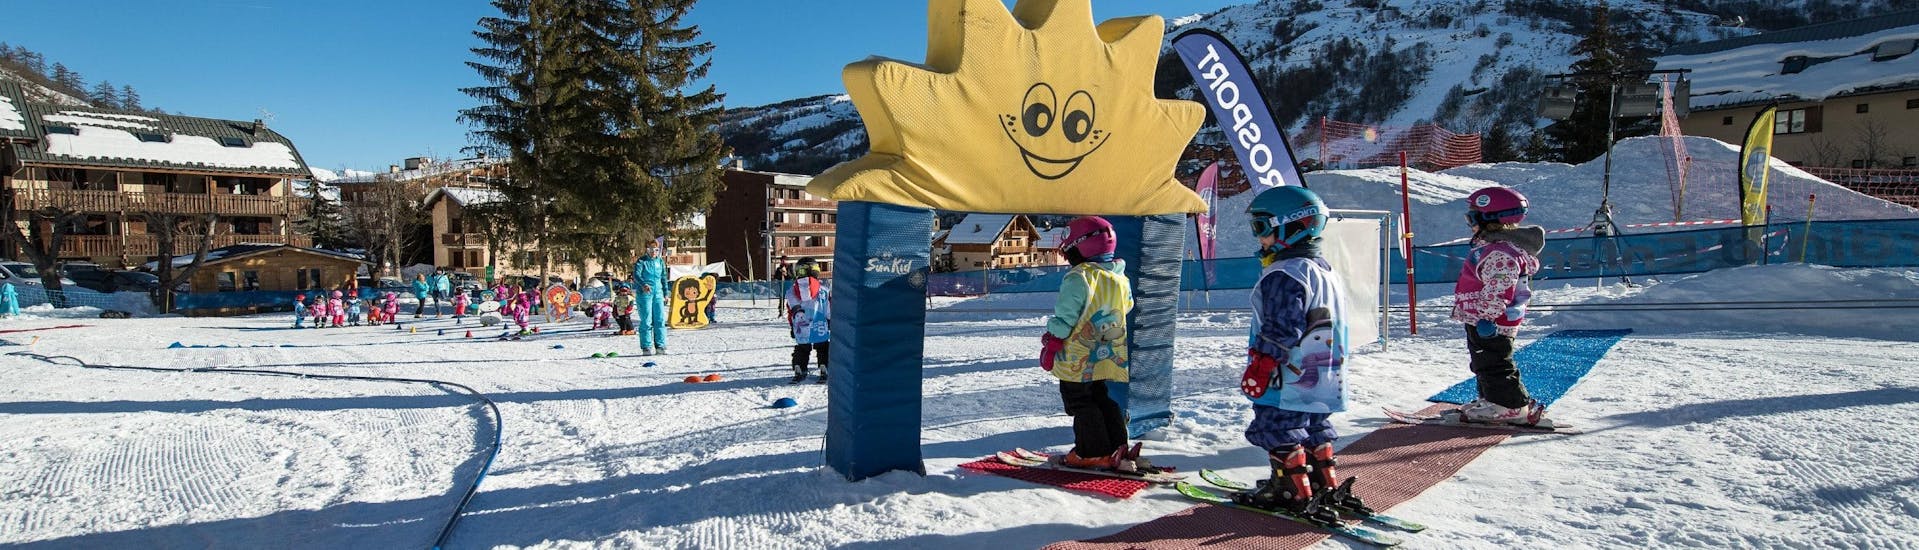 Los niños están aprendiendo a esquiar con juegos en el área seguro del jardín infantil durante sus clases de esquí para niños (3-4 años) - Mañana con la escuela de esquí ESI Ecoloski Barèges.